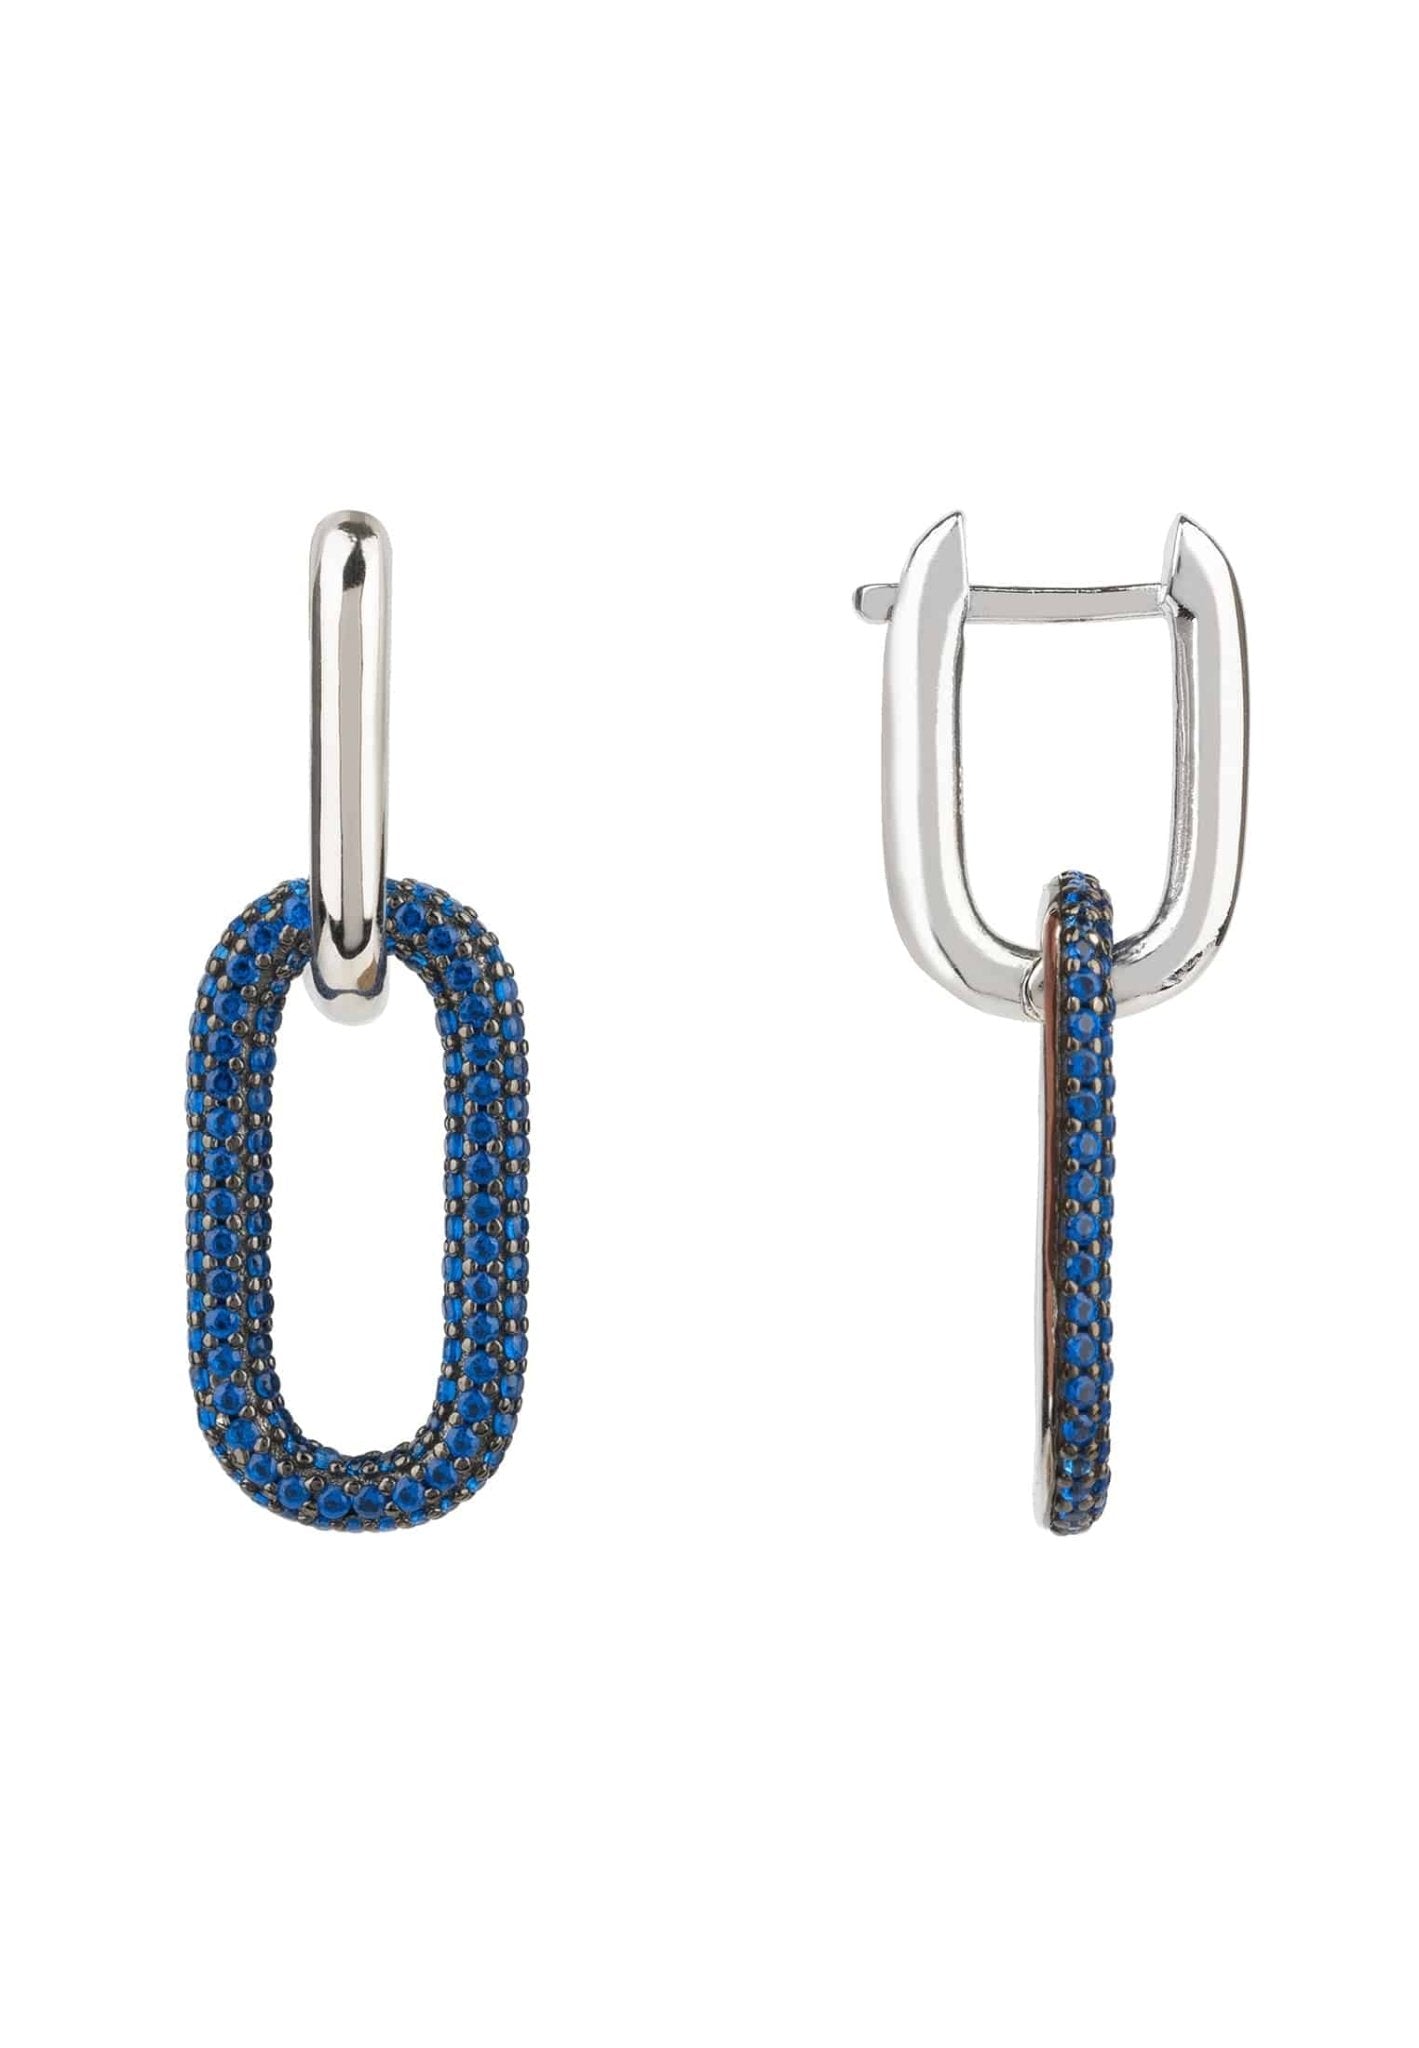 Chain Link Earrings Sapphire Blue Silver - LATELITA Earrings